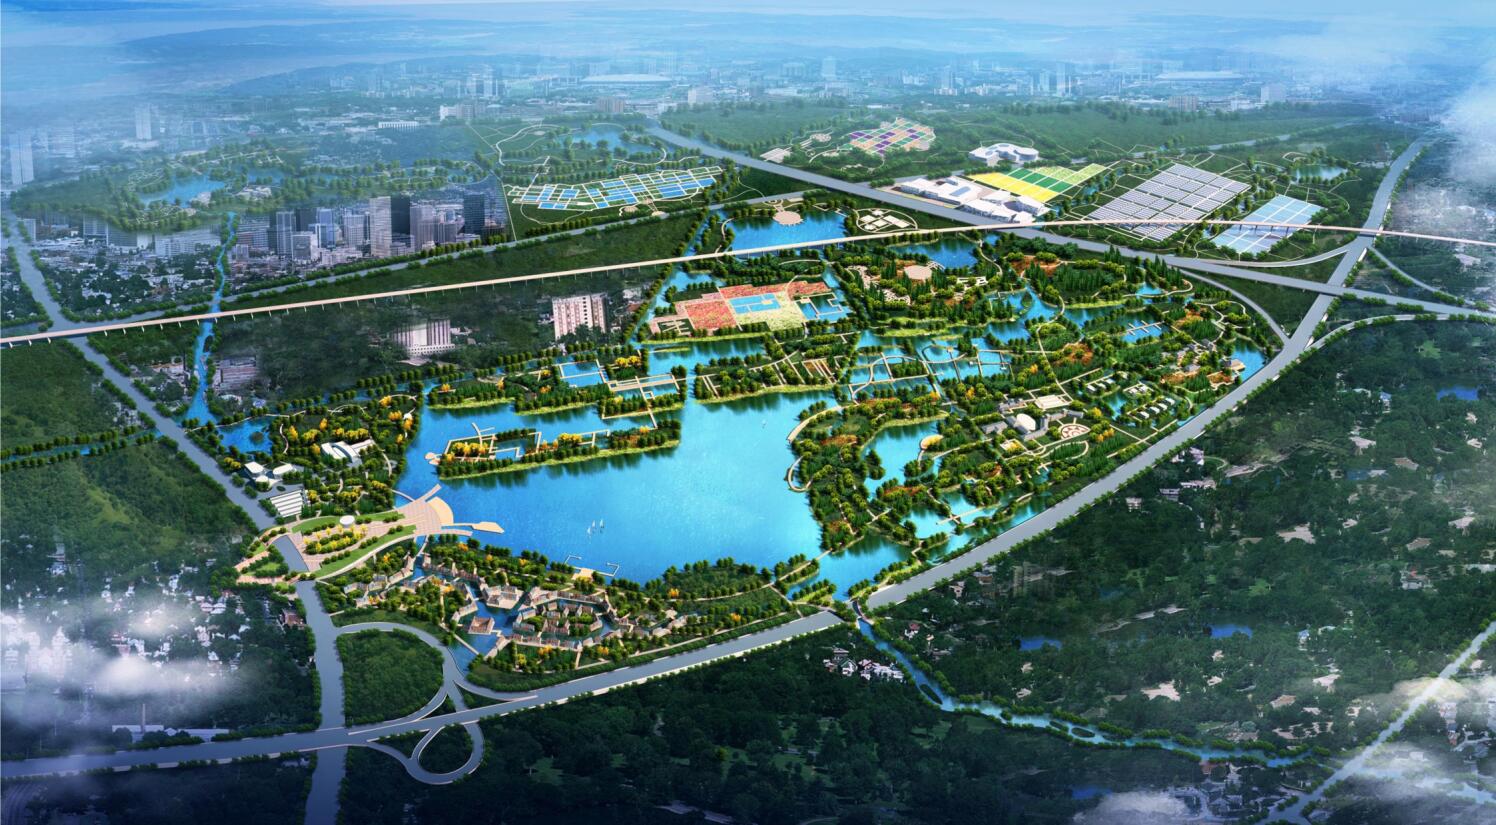 这是中法两国合作建设的第一个生态城,也是湖北省可持续发展战略和